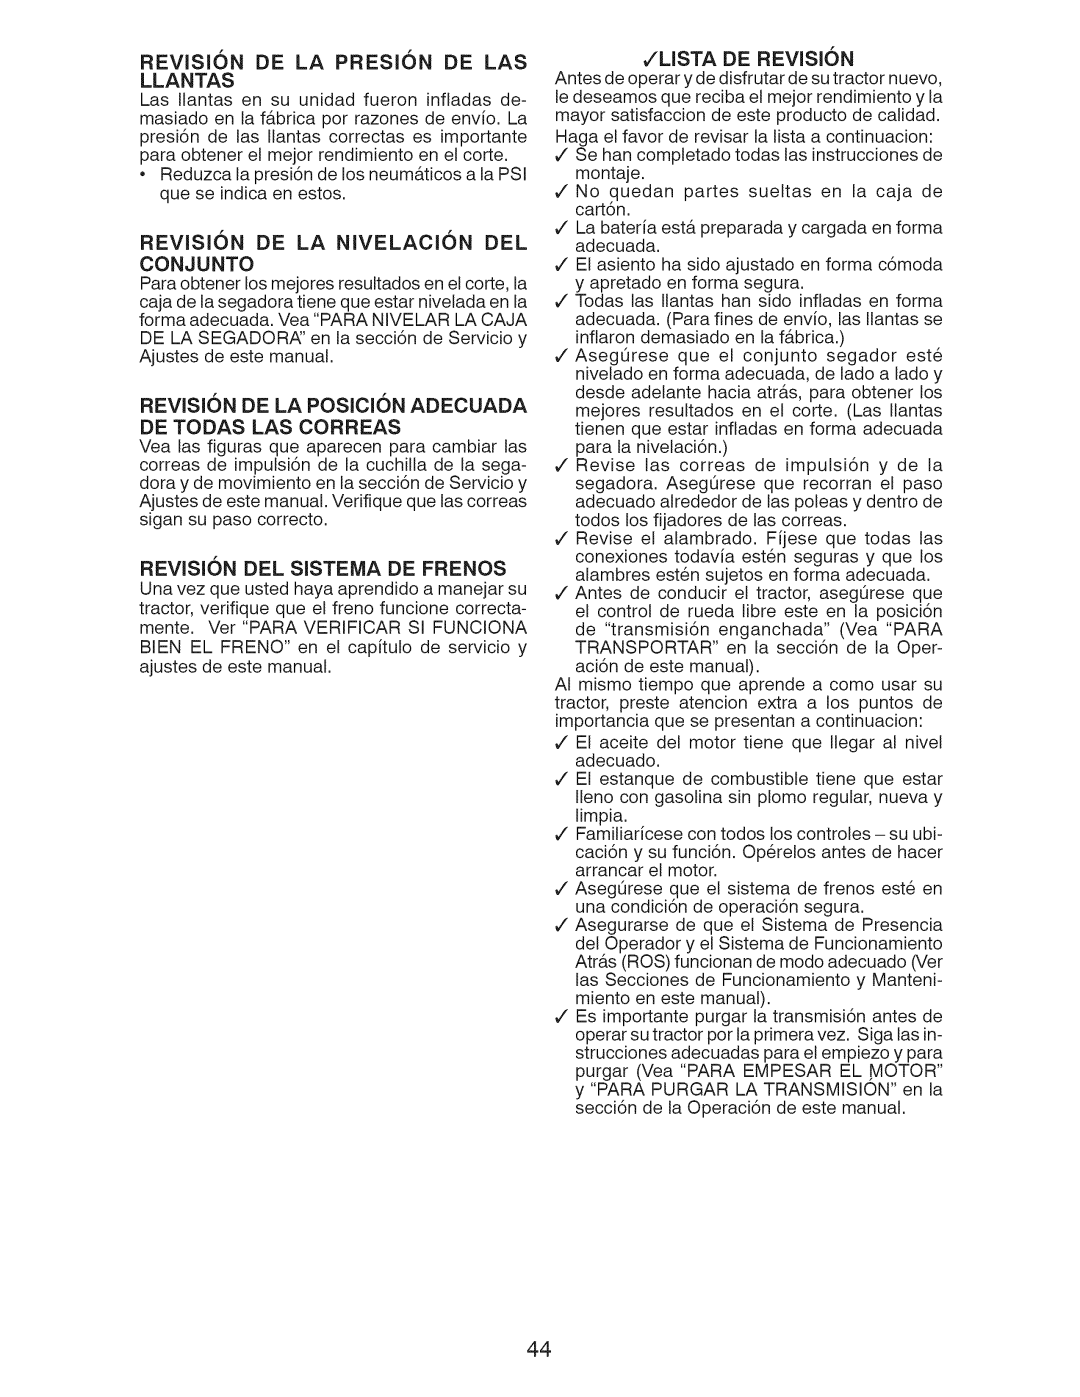 Craftsman 917.28955 owner manual Revision Del Sistema De Frenos, Jlista De Revision 